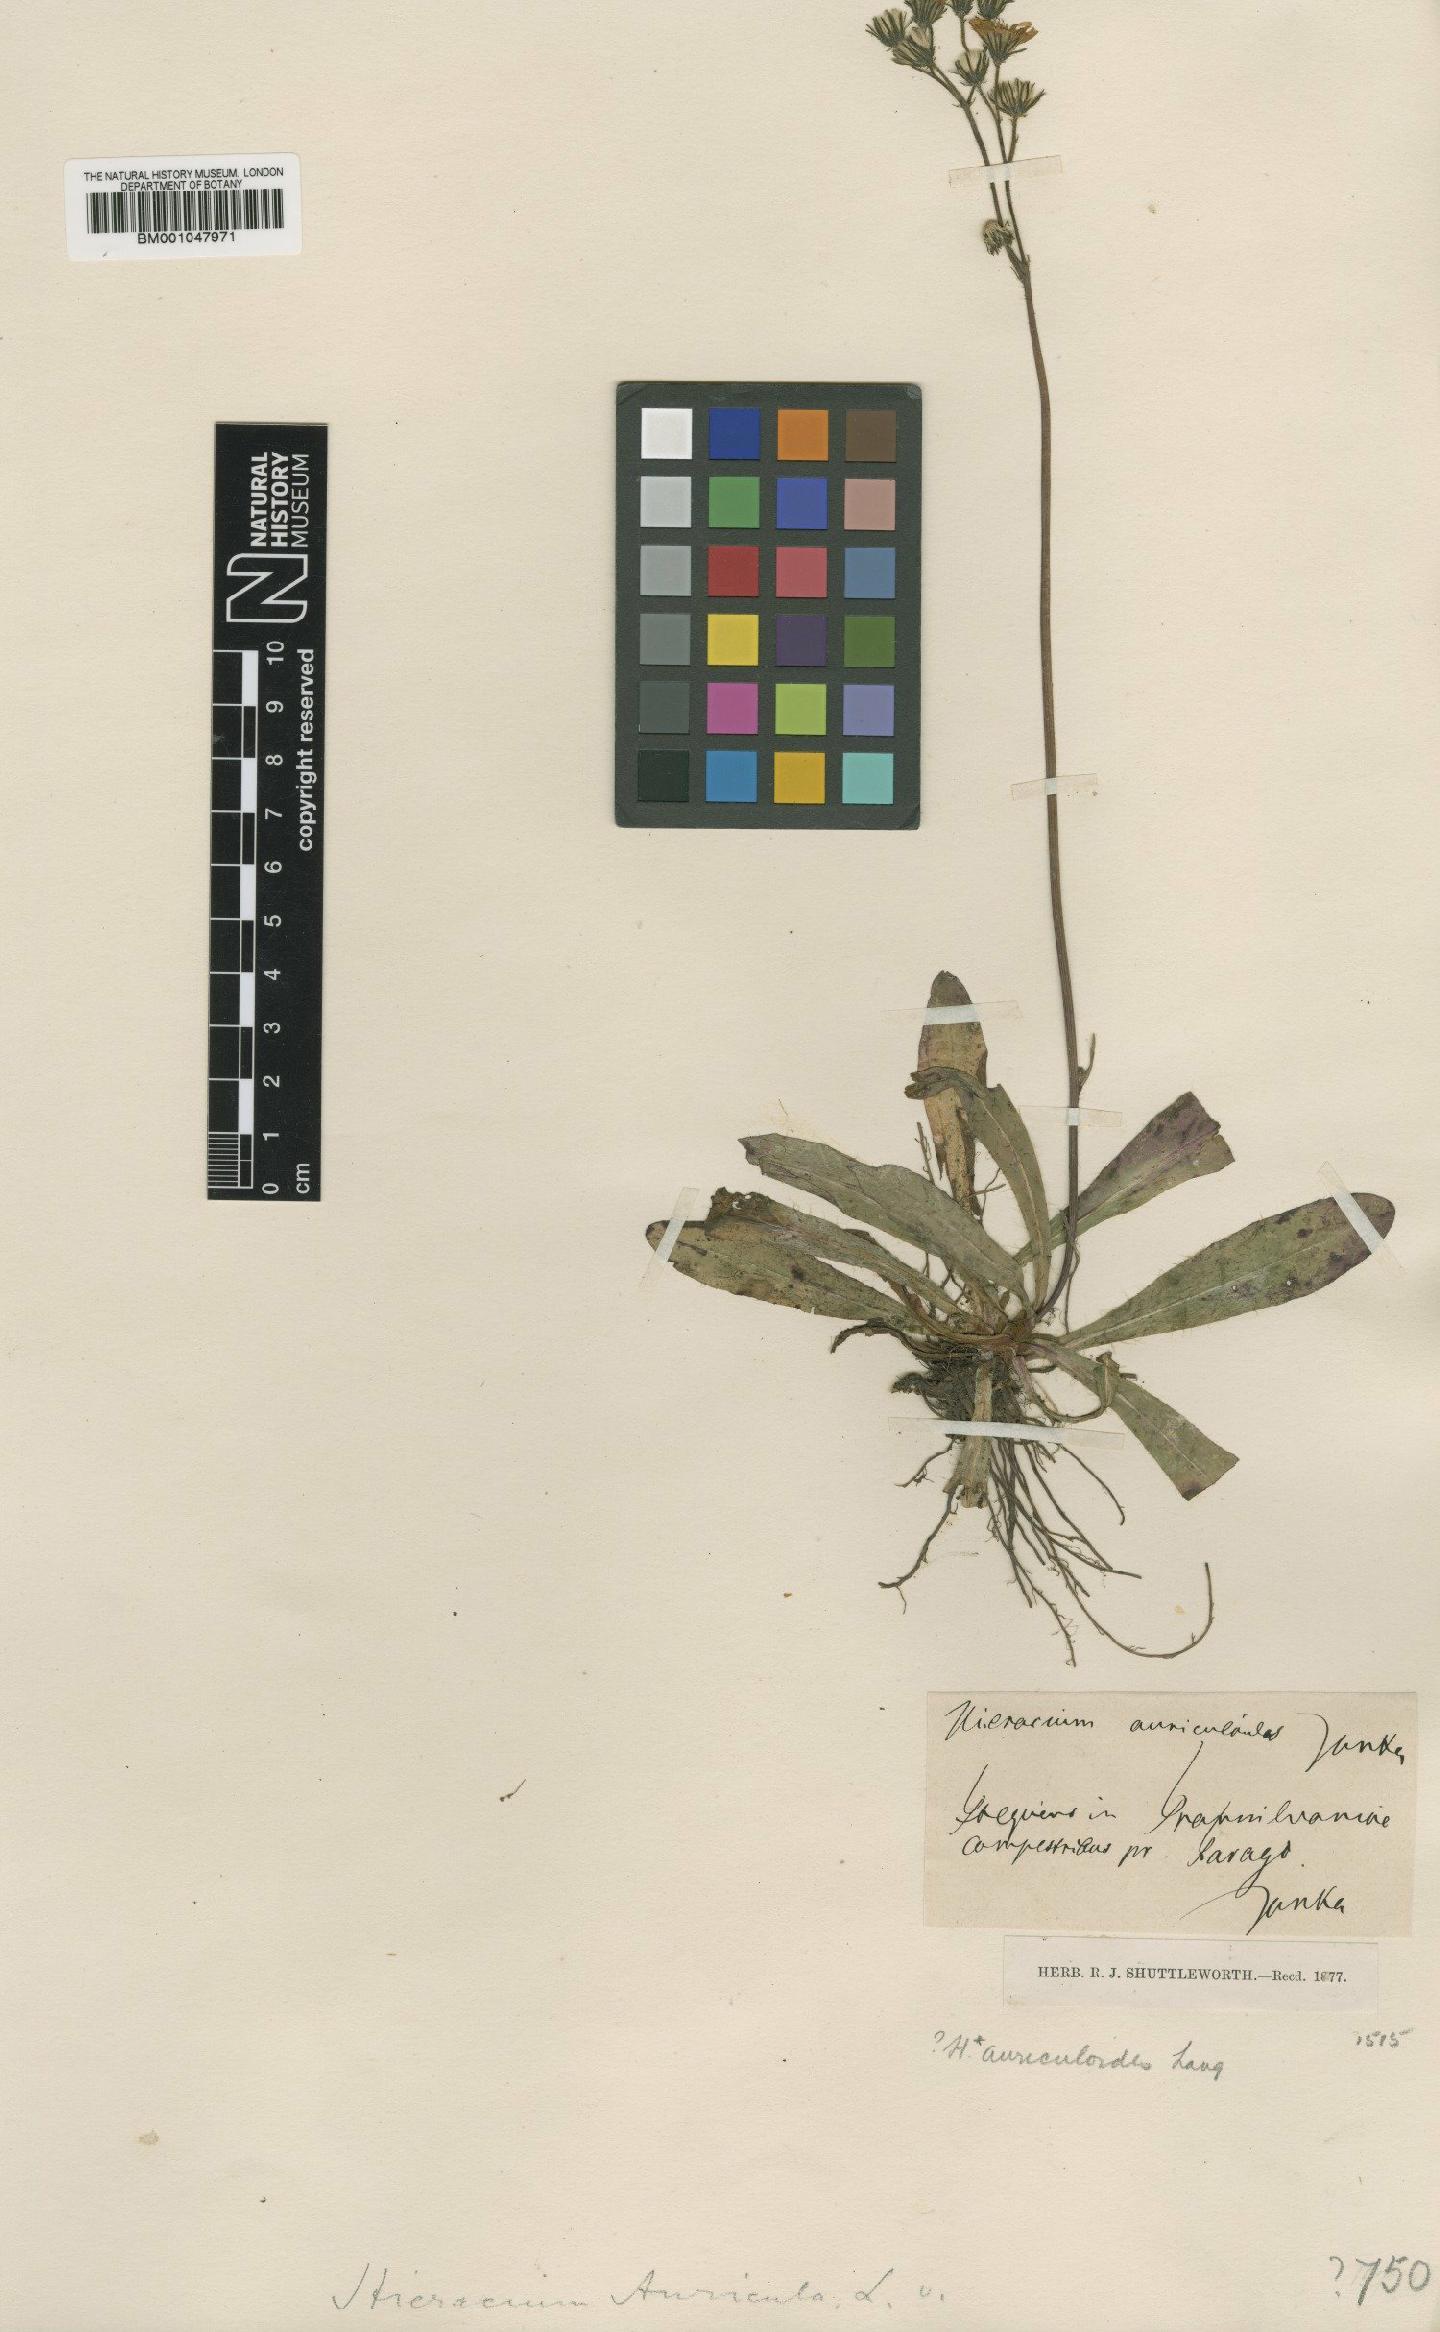 To NHMUK collection (Hieracium auriculoides Lang; NHMUK:ecatalogue:2820350)